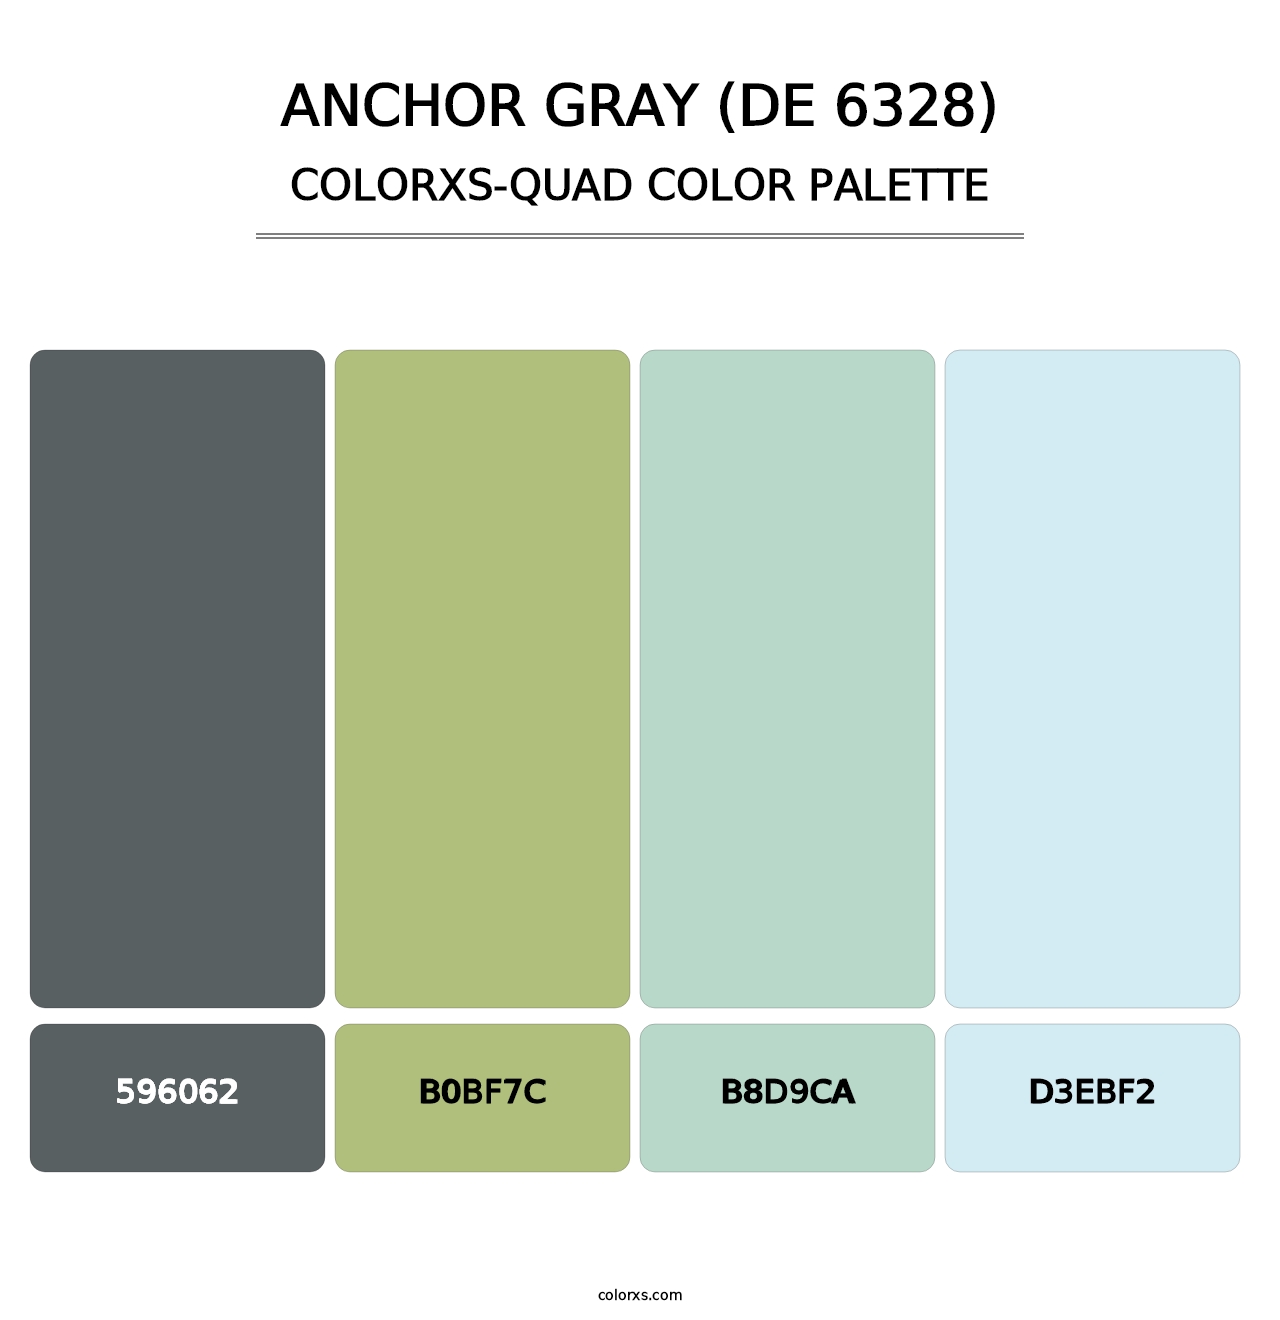 Anchor Gray (DE 6328) - Colorxs Quad Palette